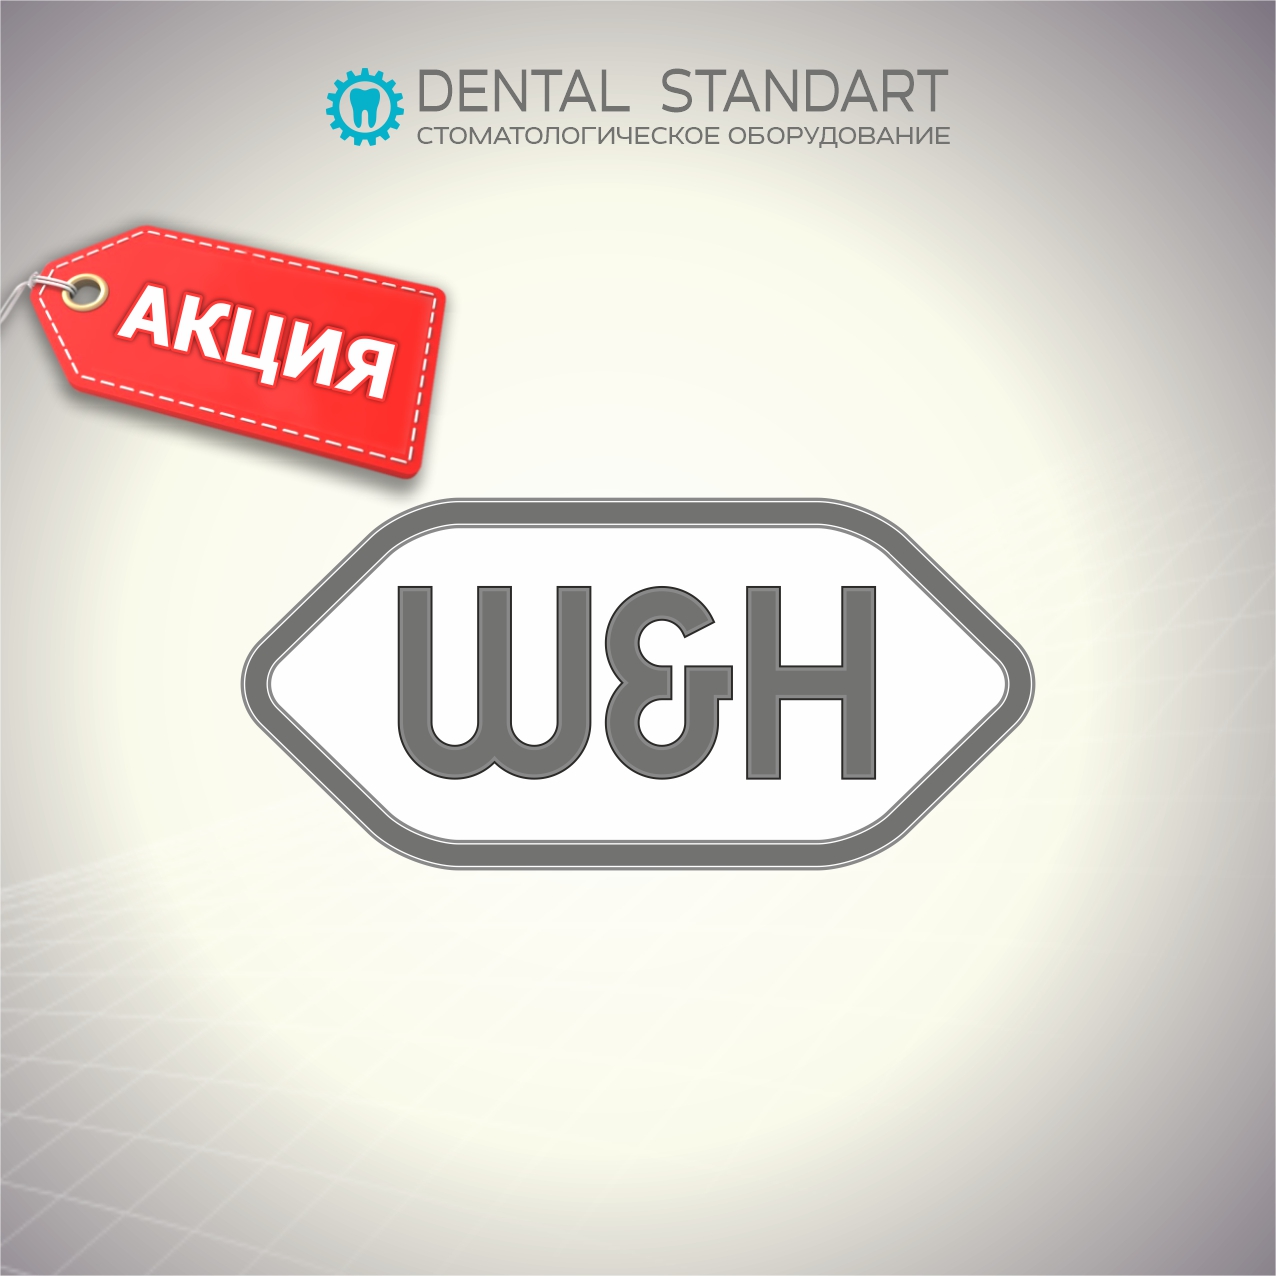 ❗️АКЦИЯ на оборудование W&H Dentalwerk (Австрия) в магазине стоматологического оборудования❗️